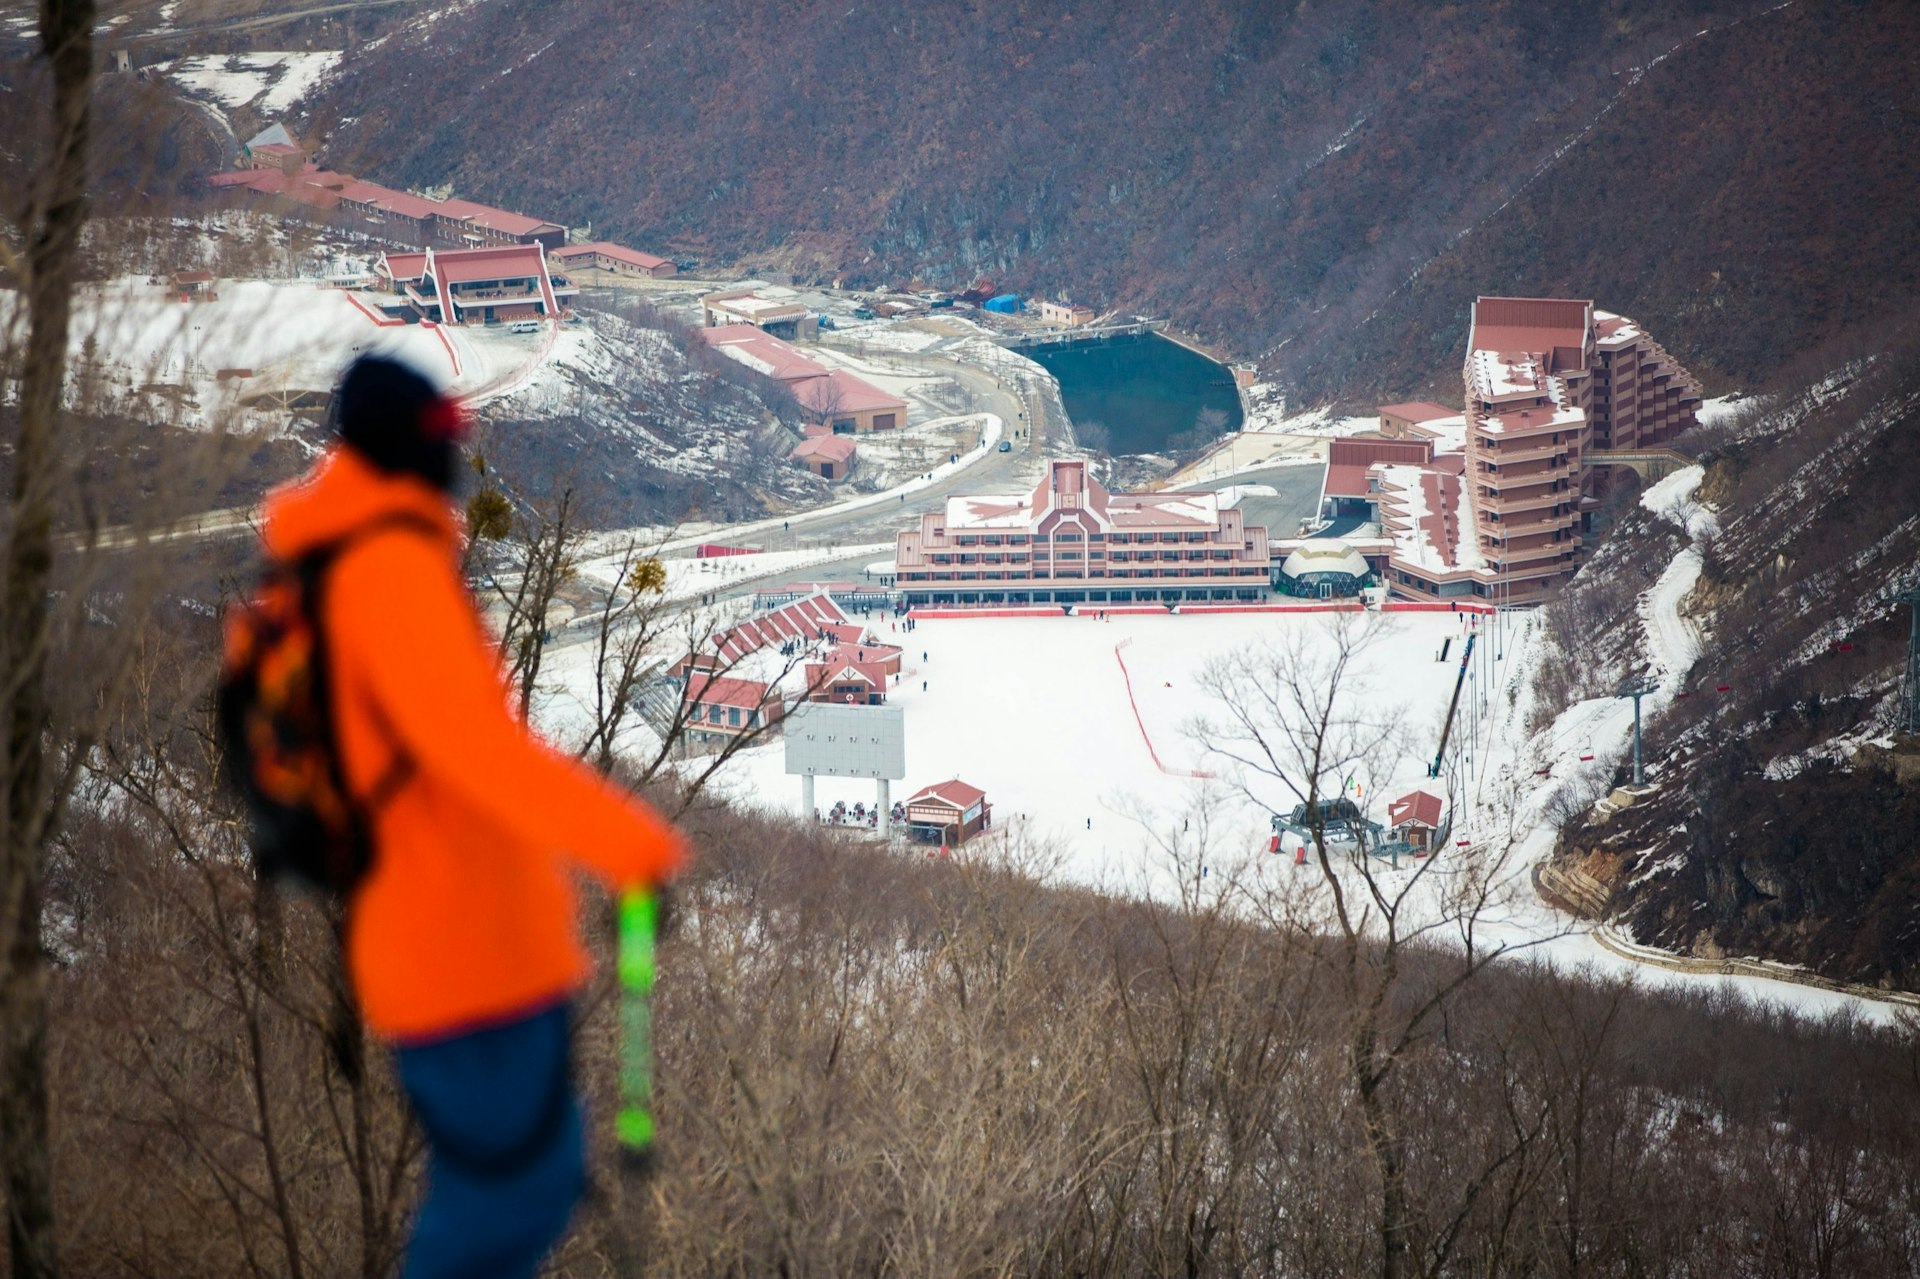 A glimpse into North Korea’s embryonic snowriding culture